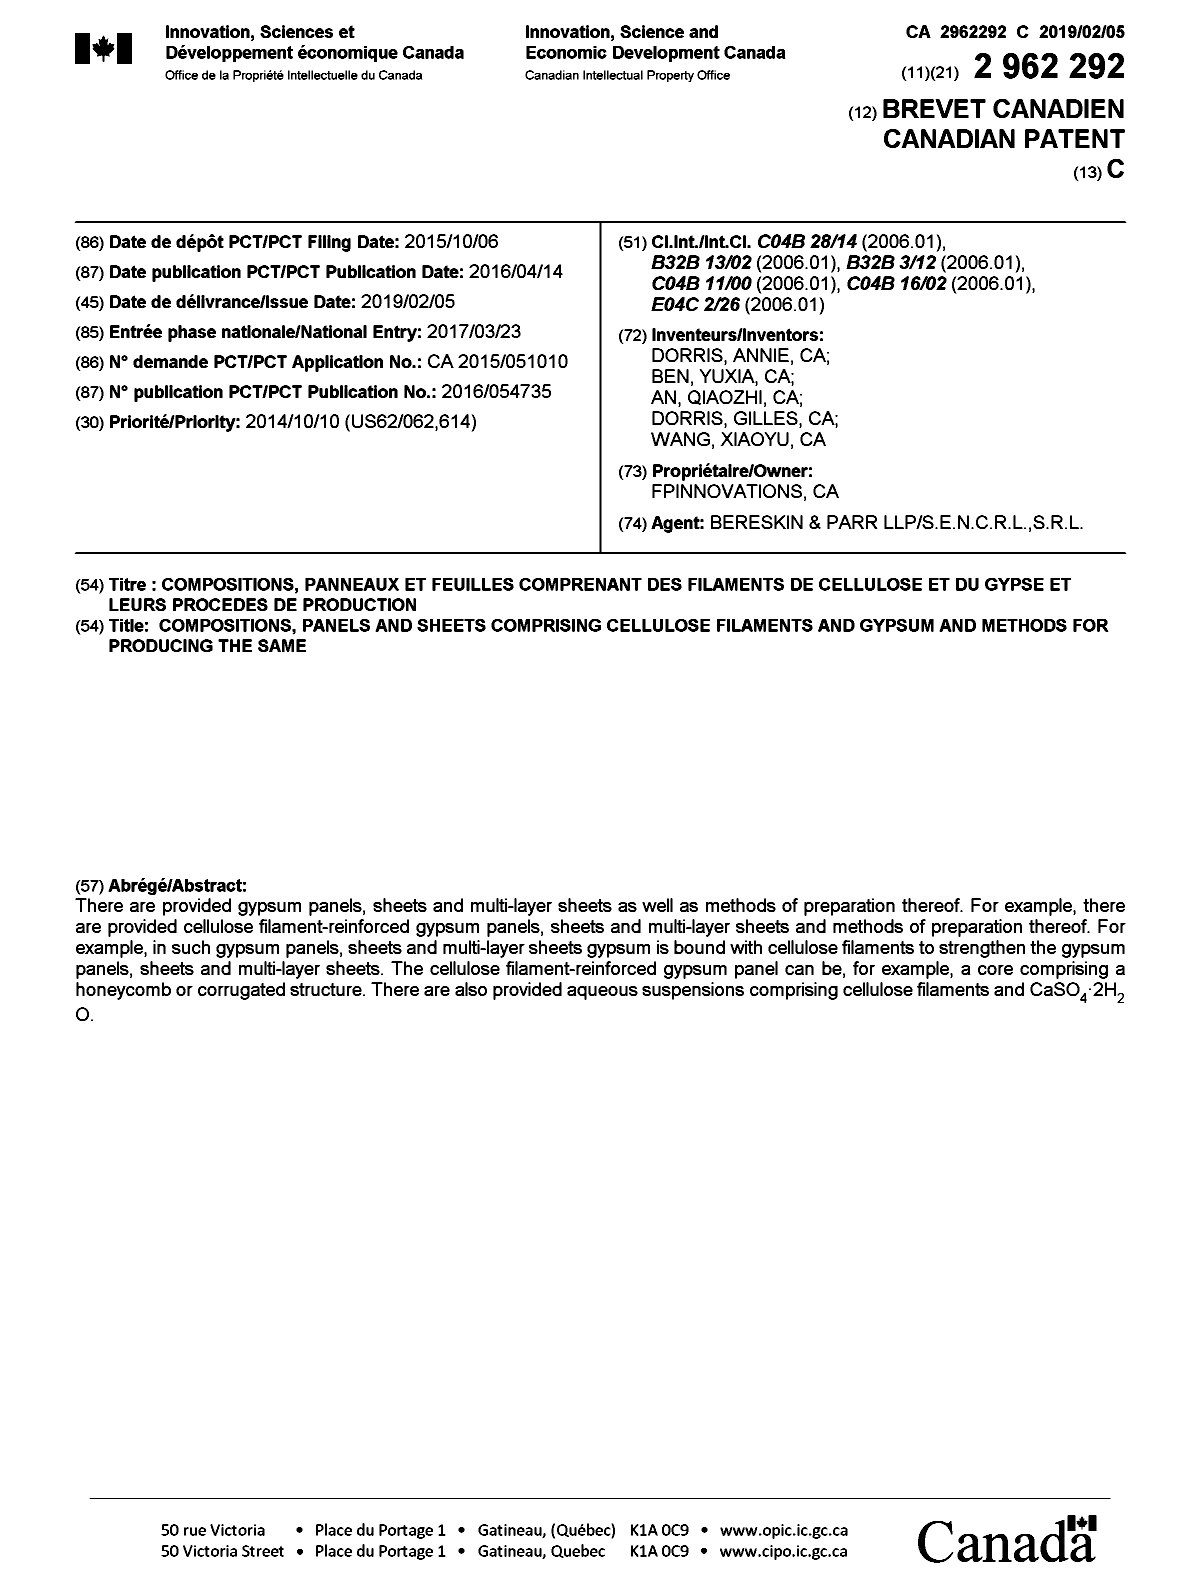 Document de brevet canadien 2962292. Page couverture 20190108. Image 1 de 1